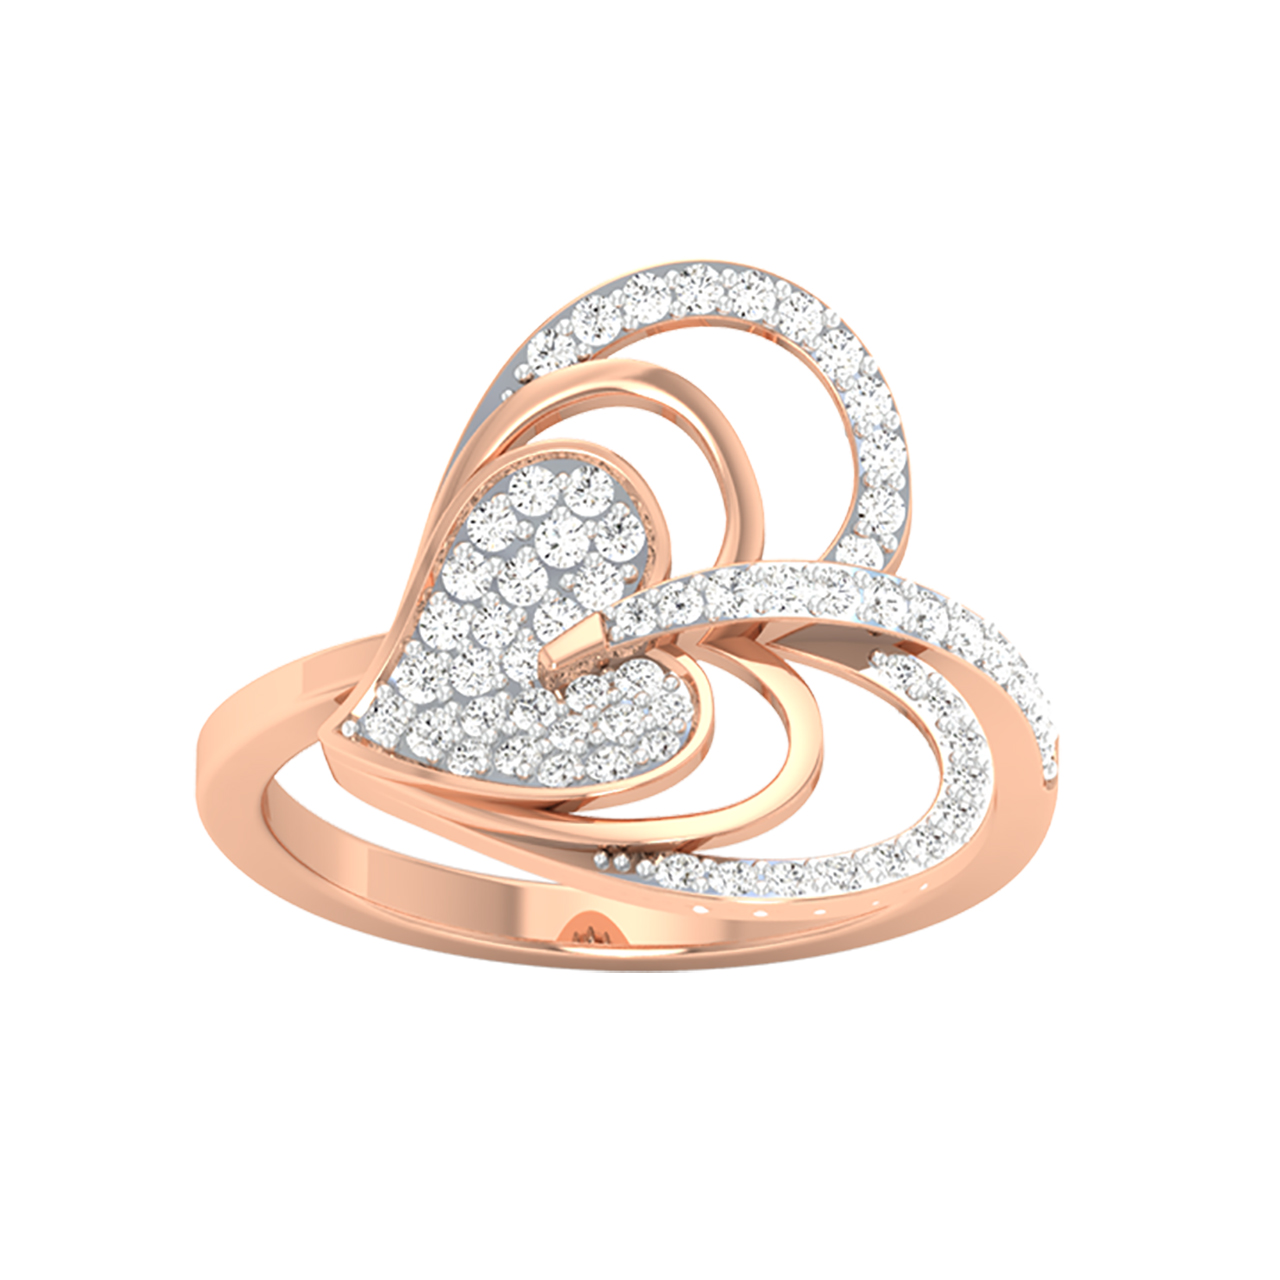 Braid Round Diamond Engagement Ring